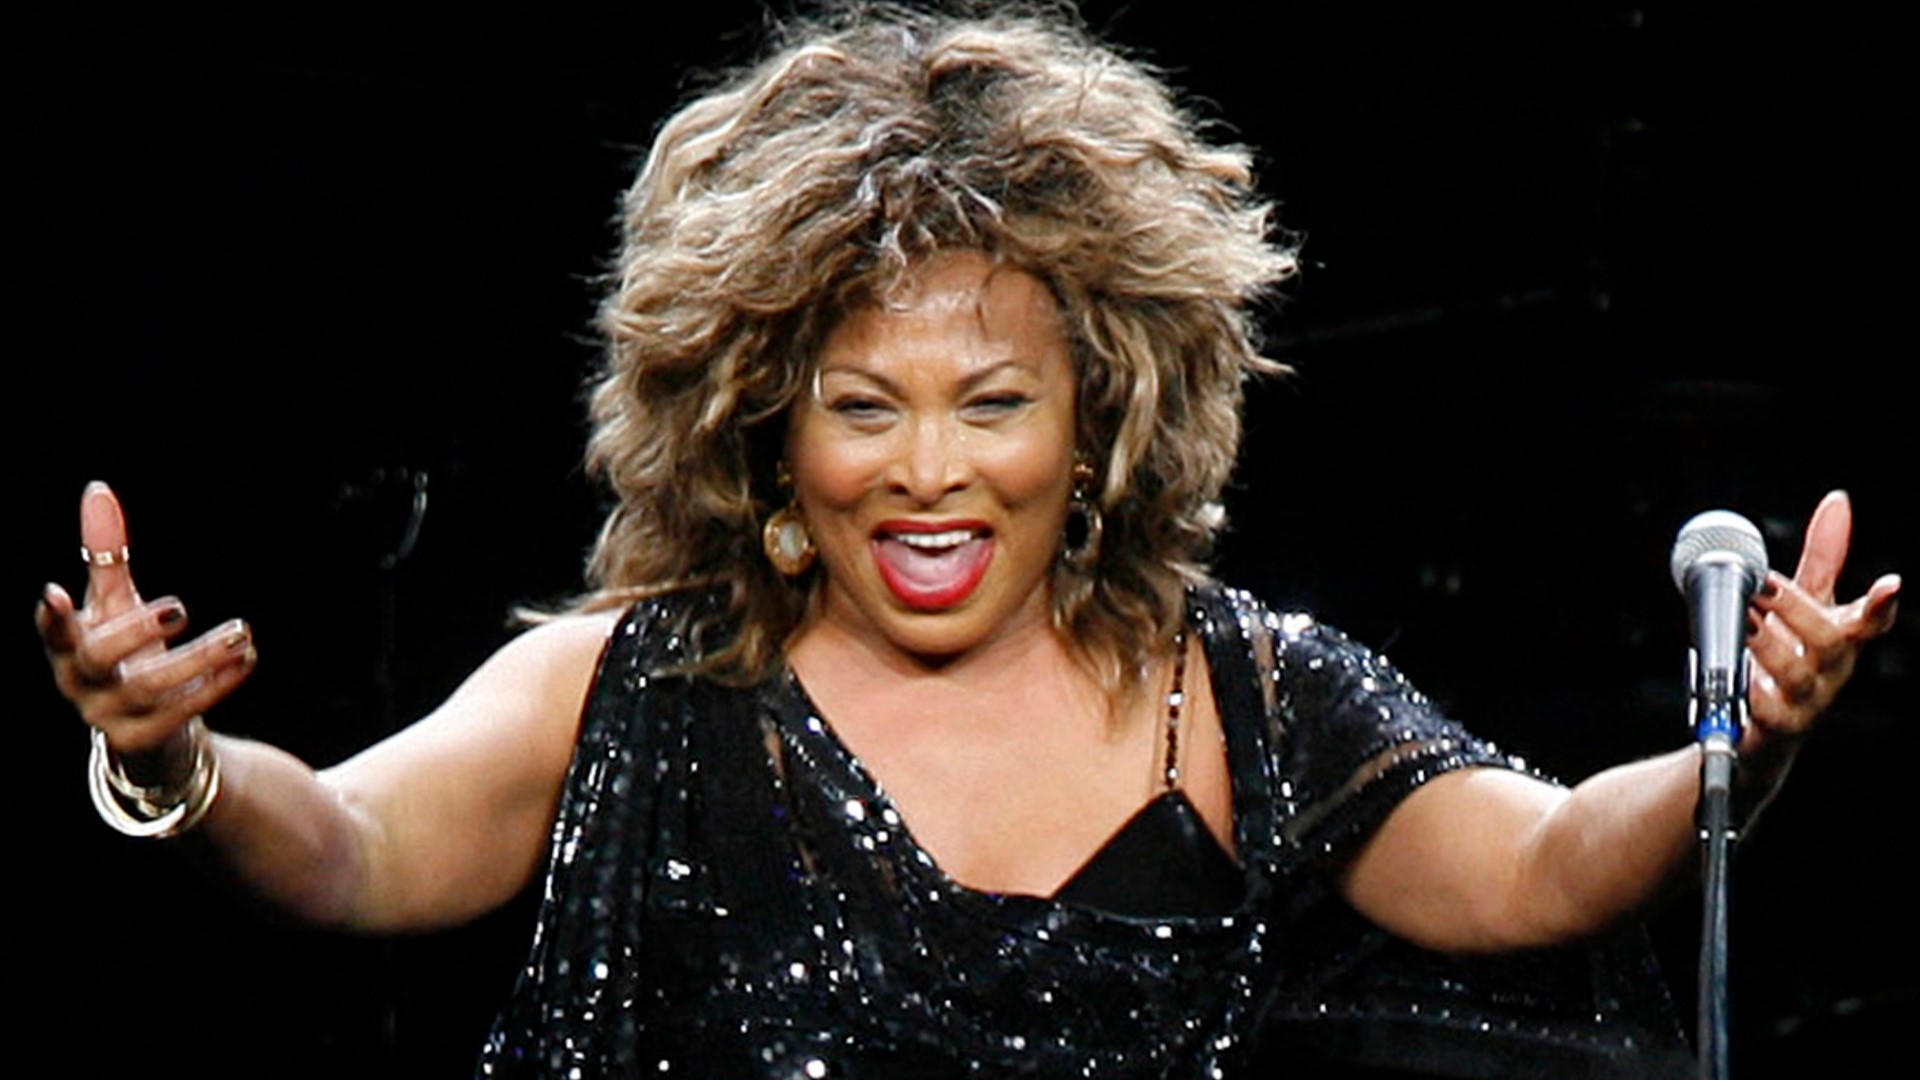 Tina Turner has died at 83.